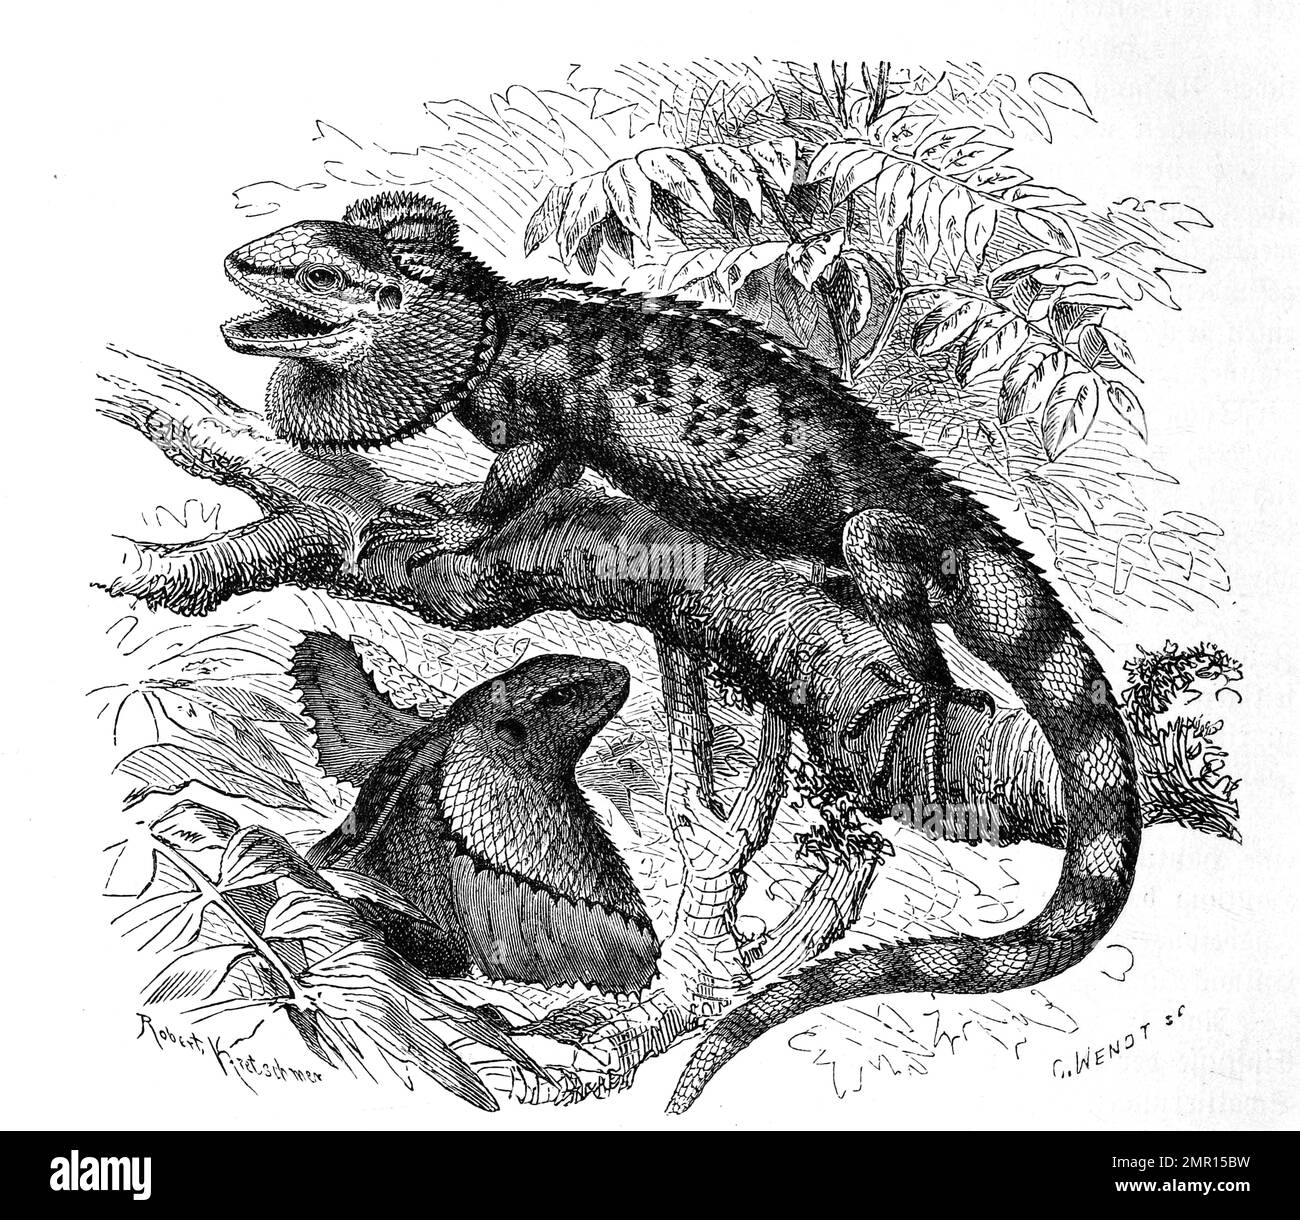 Kragenechse, Chlamydosaurus kingii, eine in Australien und Neuguinea heimische, rund 1 m lang werdende Art der Agamen, Historisch, digital restaurierte Reproduktion von einer Vorlage aus dem 19. Jahrhundert Stock Photo